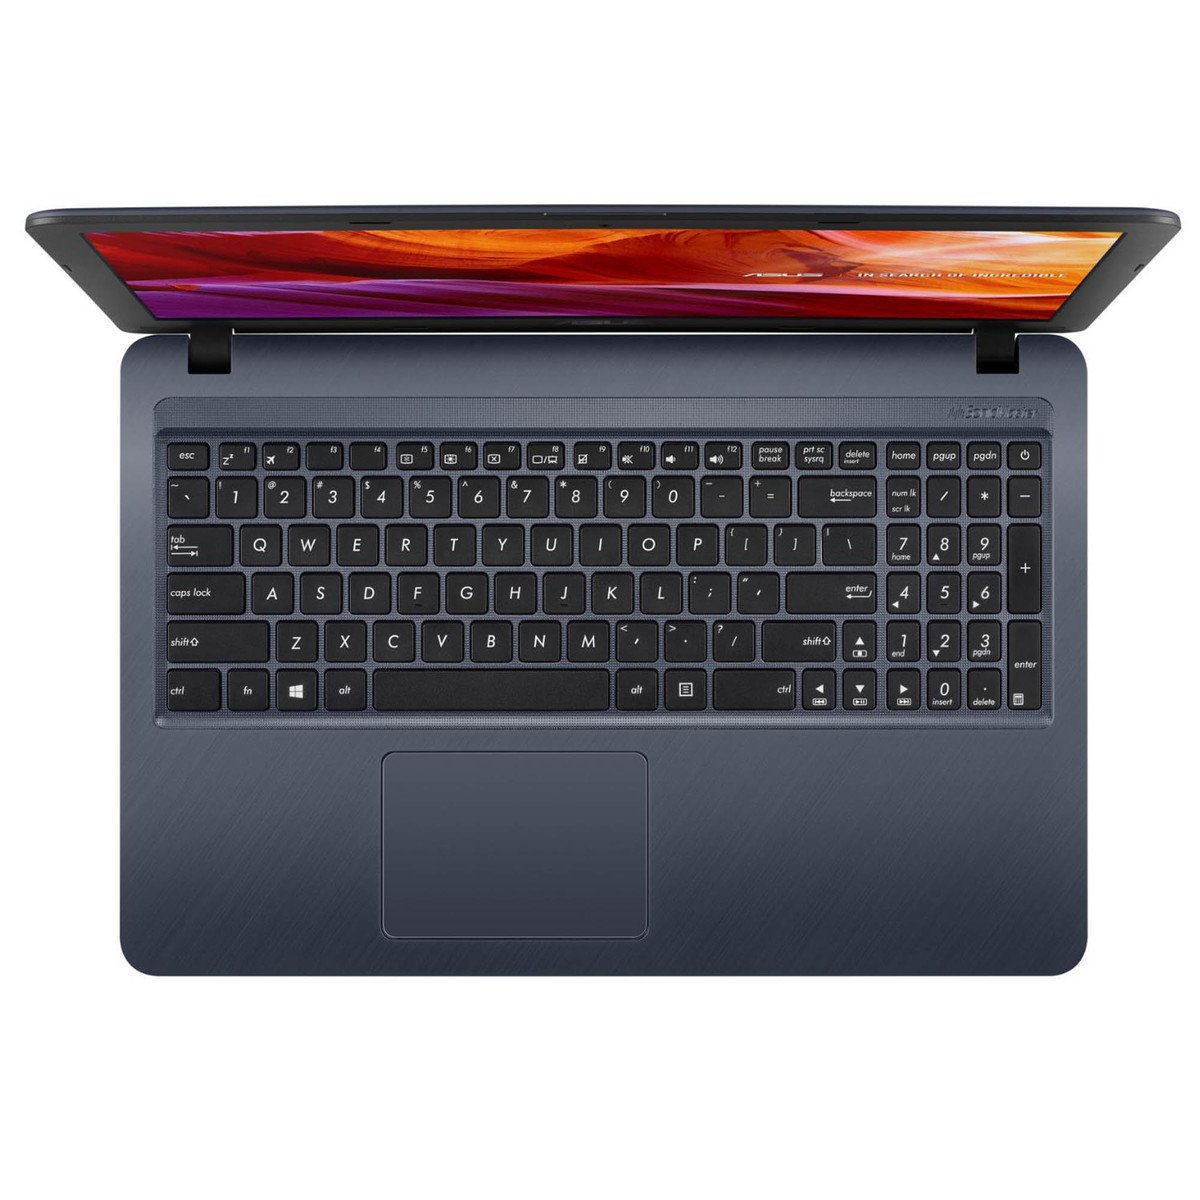 Asus NoteBook X543MA-GQ535T 15.6 inch HD 1366x768 ,Laptop, Intel  Celeron-N4000, HDD 1TB, 4GBRAM,Windows 10,Grey